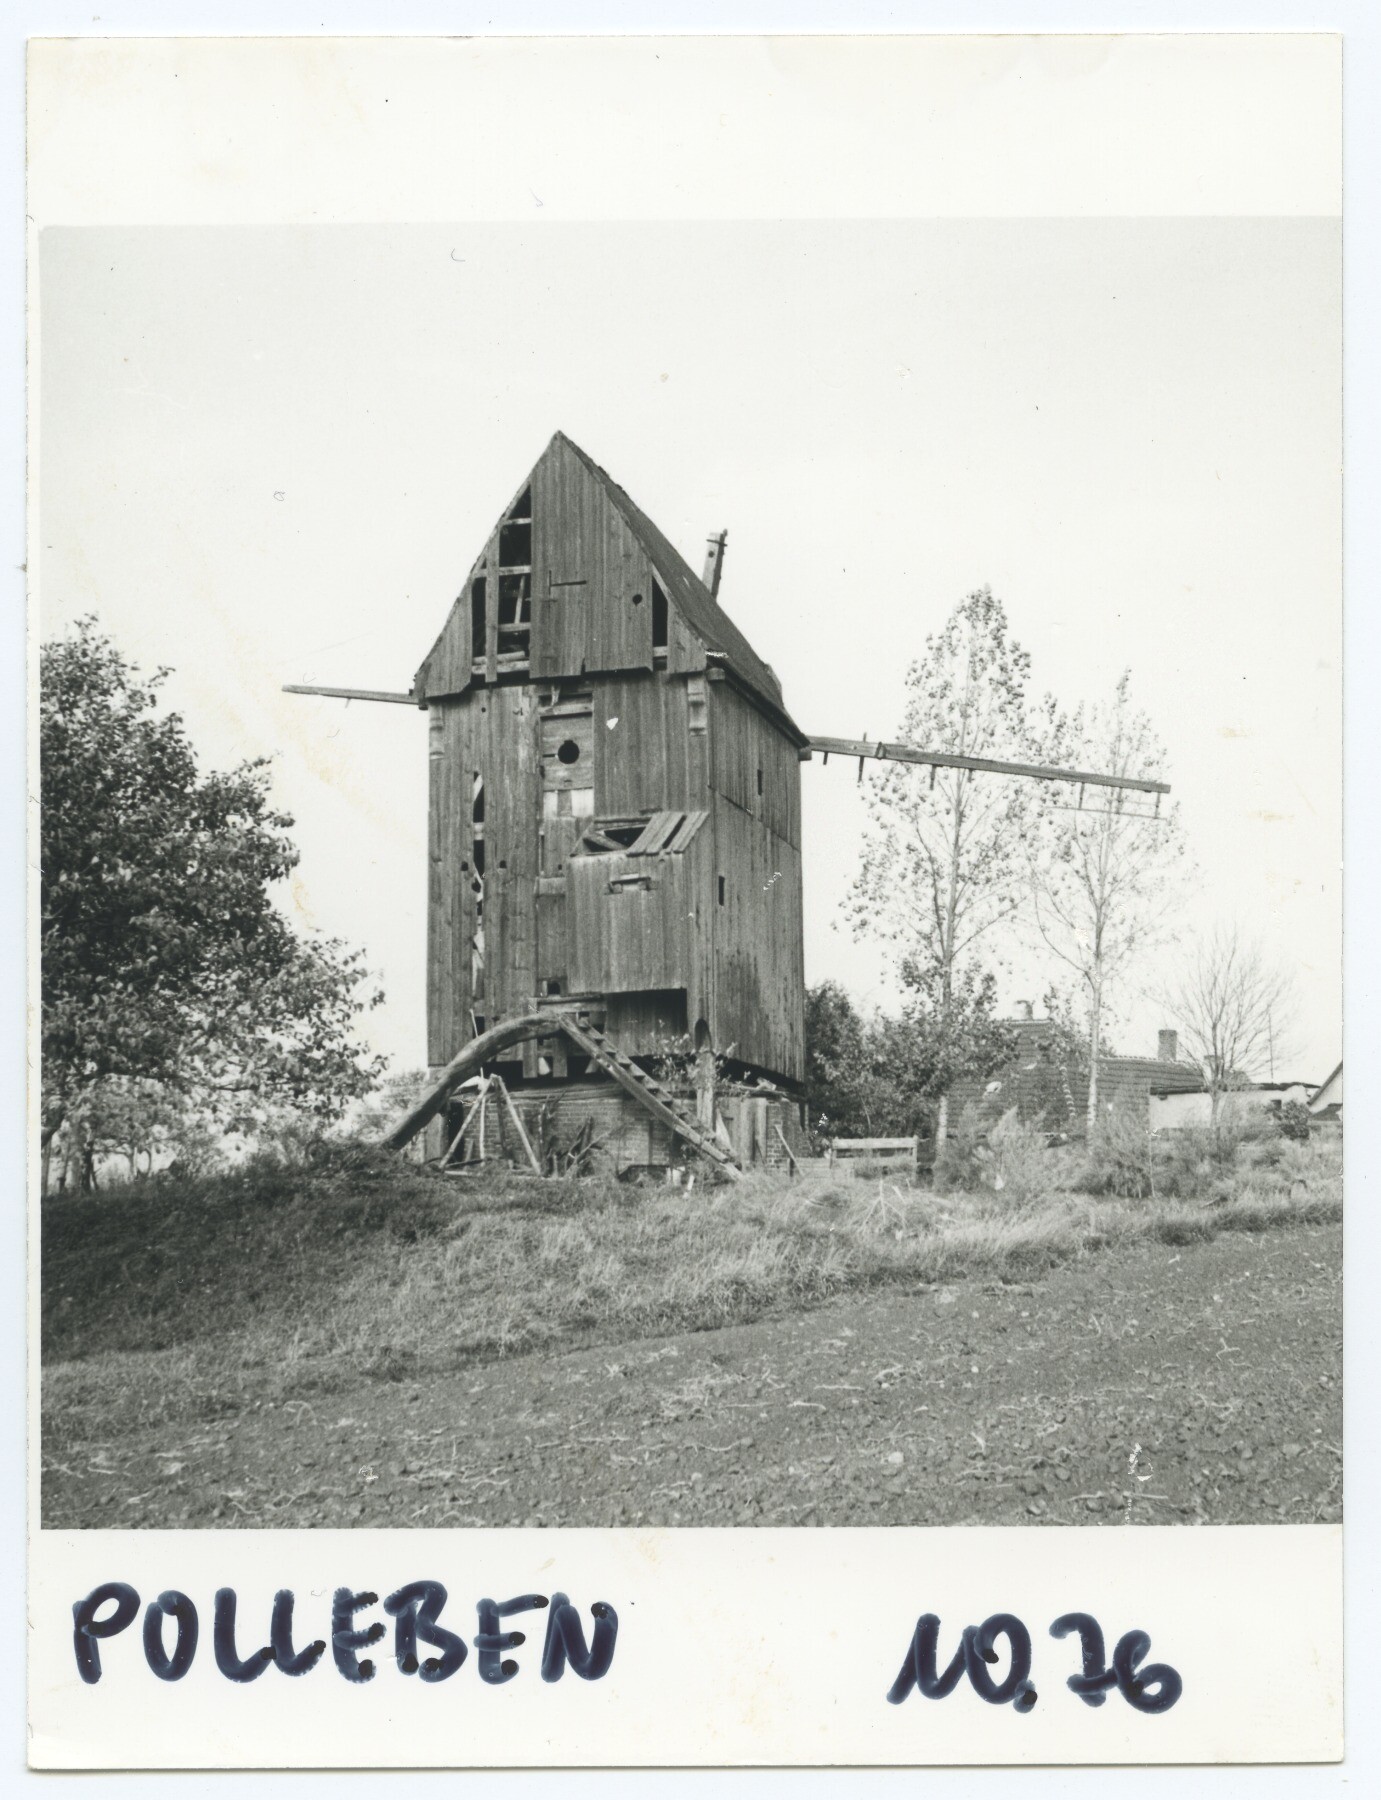 Bockwindmühle Polleben (Historische Mühle von Sanssouci CC BY-NC-ND)